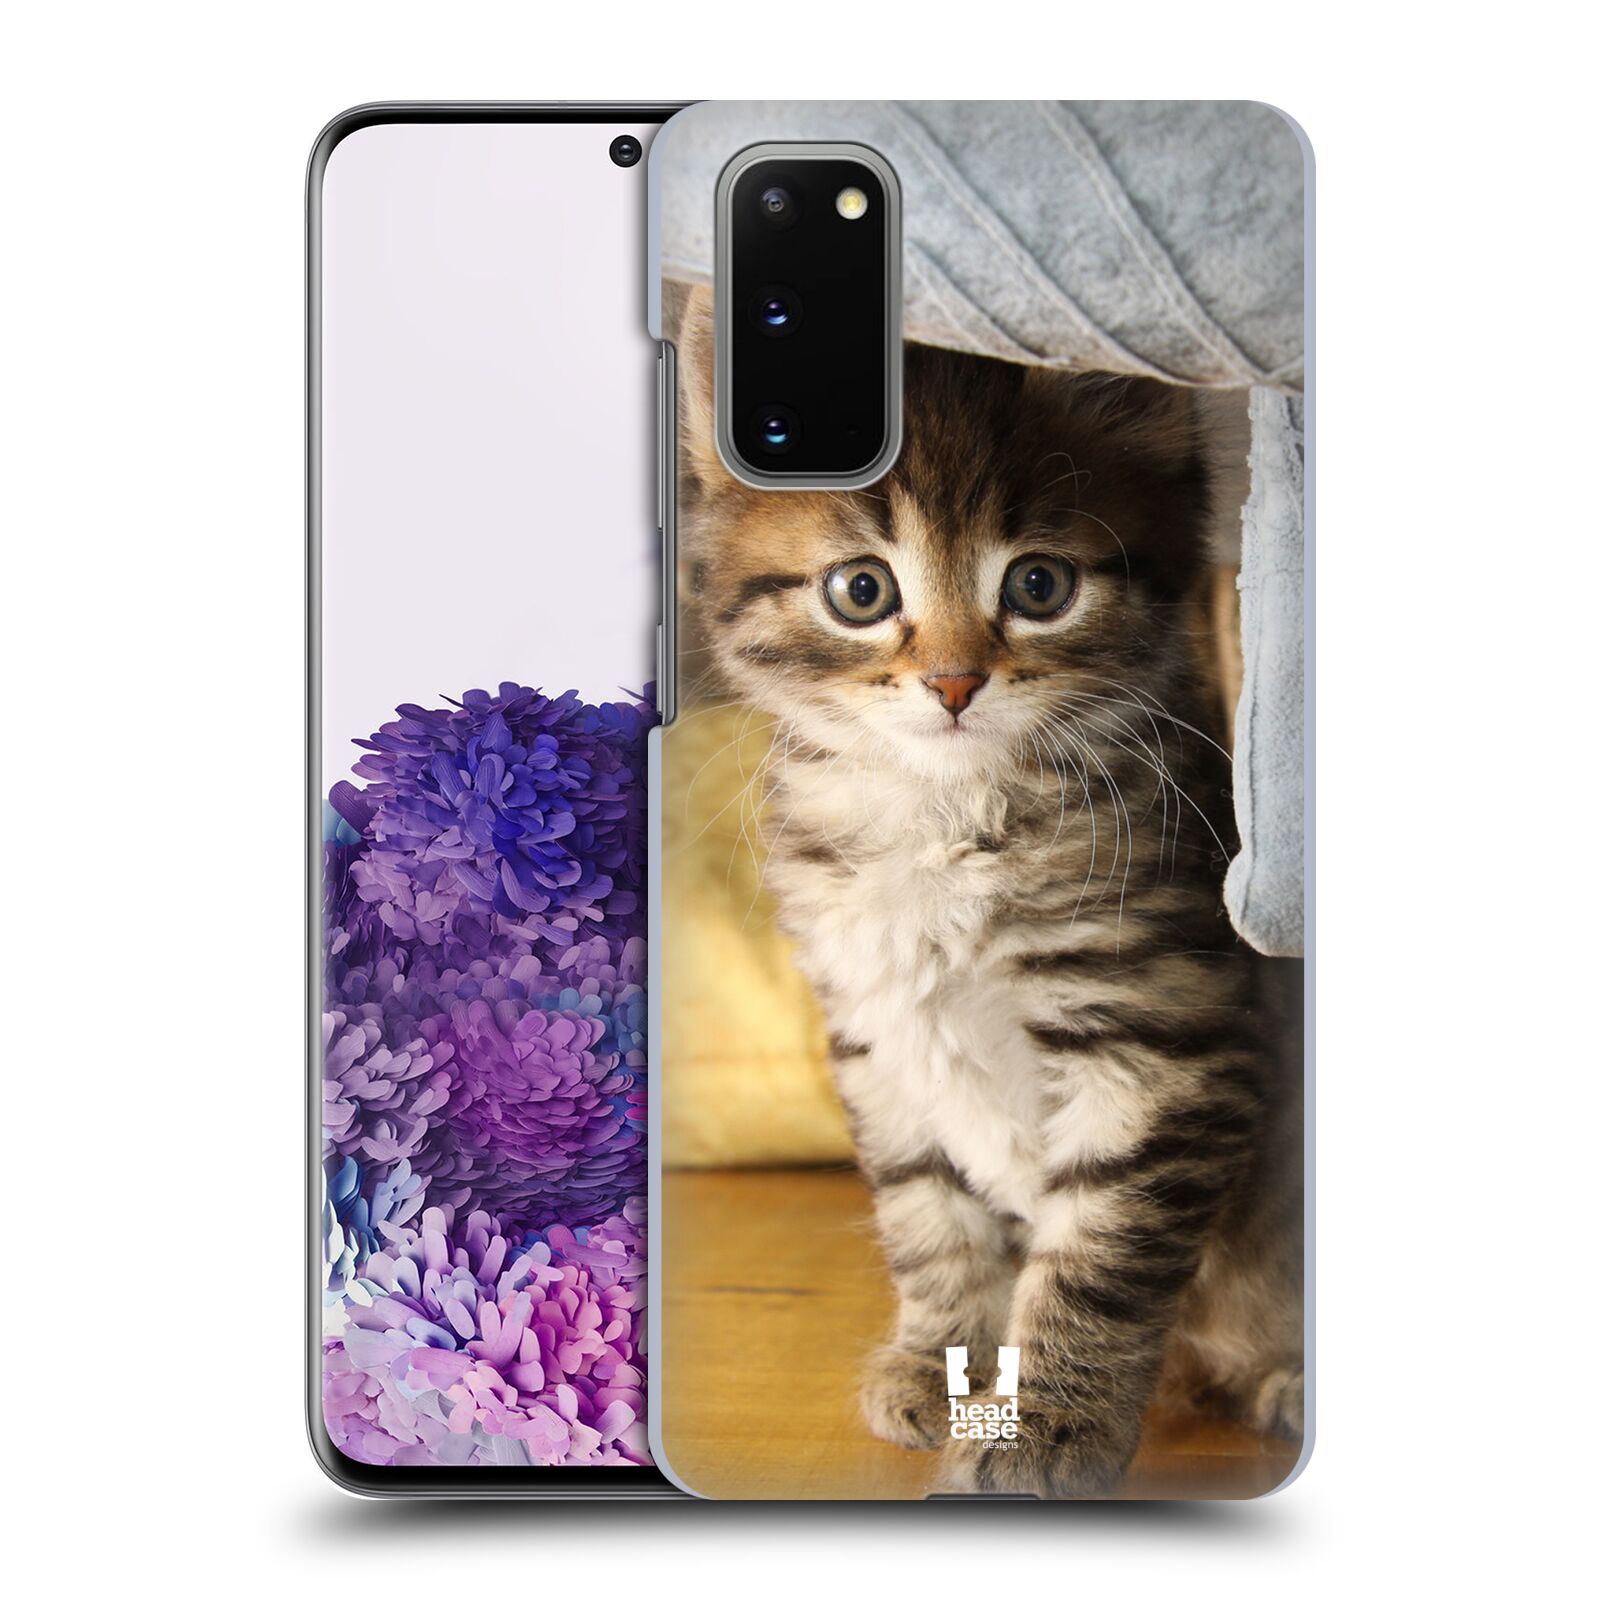 Pouzdro na mobil Samsung Galaxy S20 - HEAD CASE - vzor Kočičky koťata foto mourek